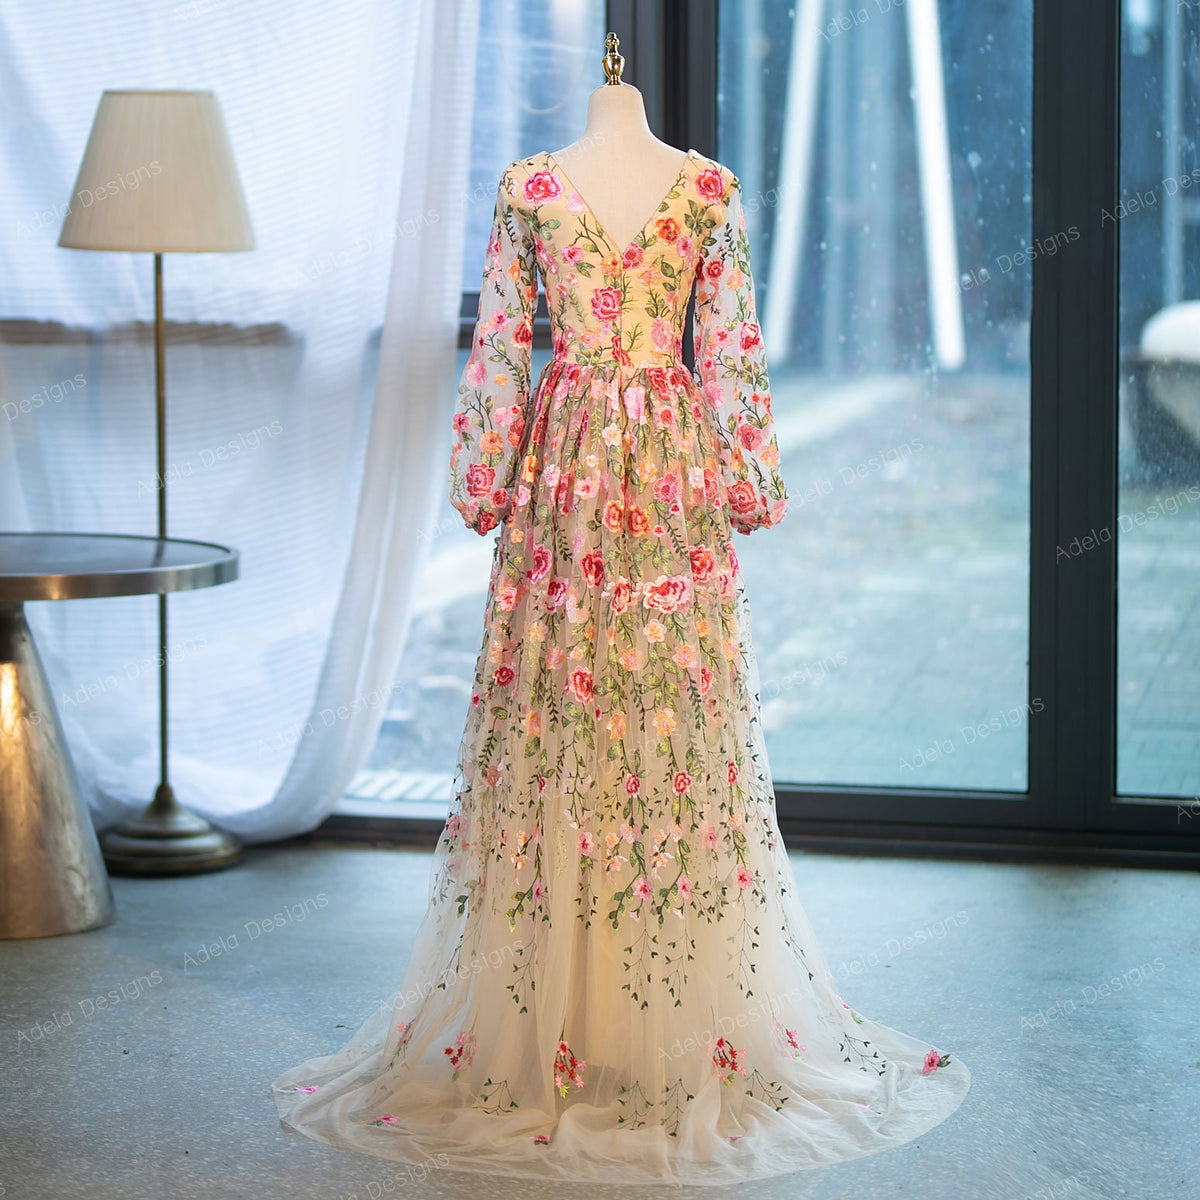 Floral Lace Aline Wedding Dress Bridal Gown Chamapgne V Neckline V Back Colorful Dress Long Bishop Sleeves Short Train